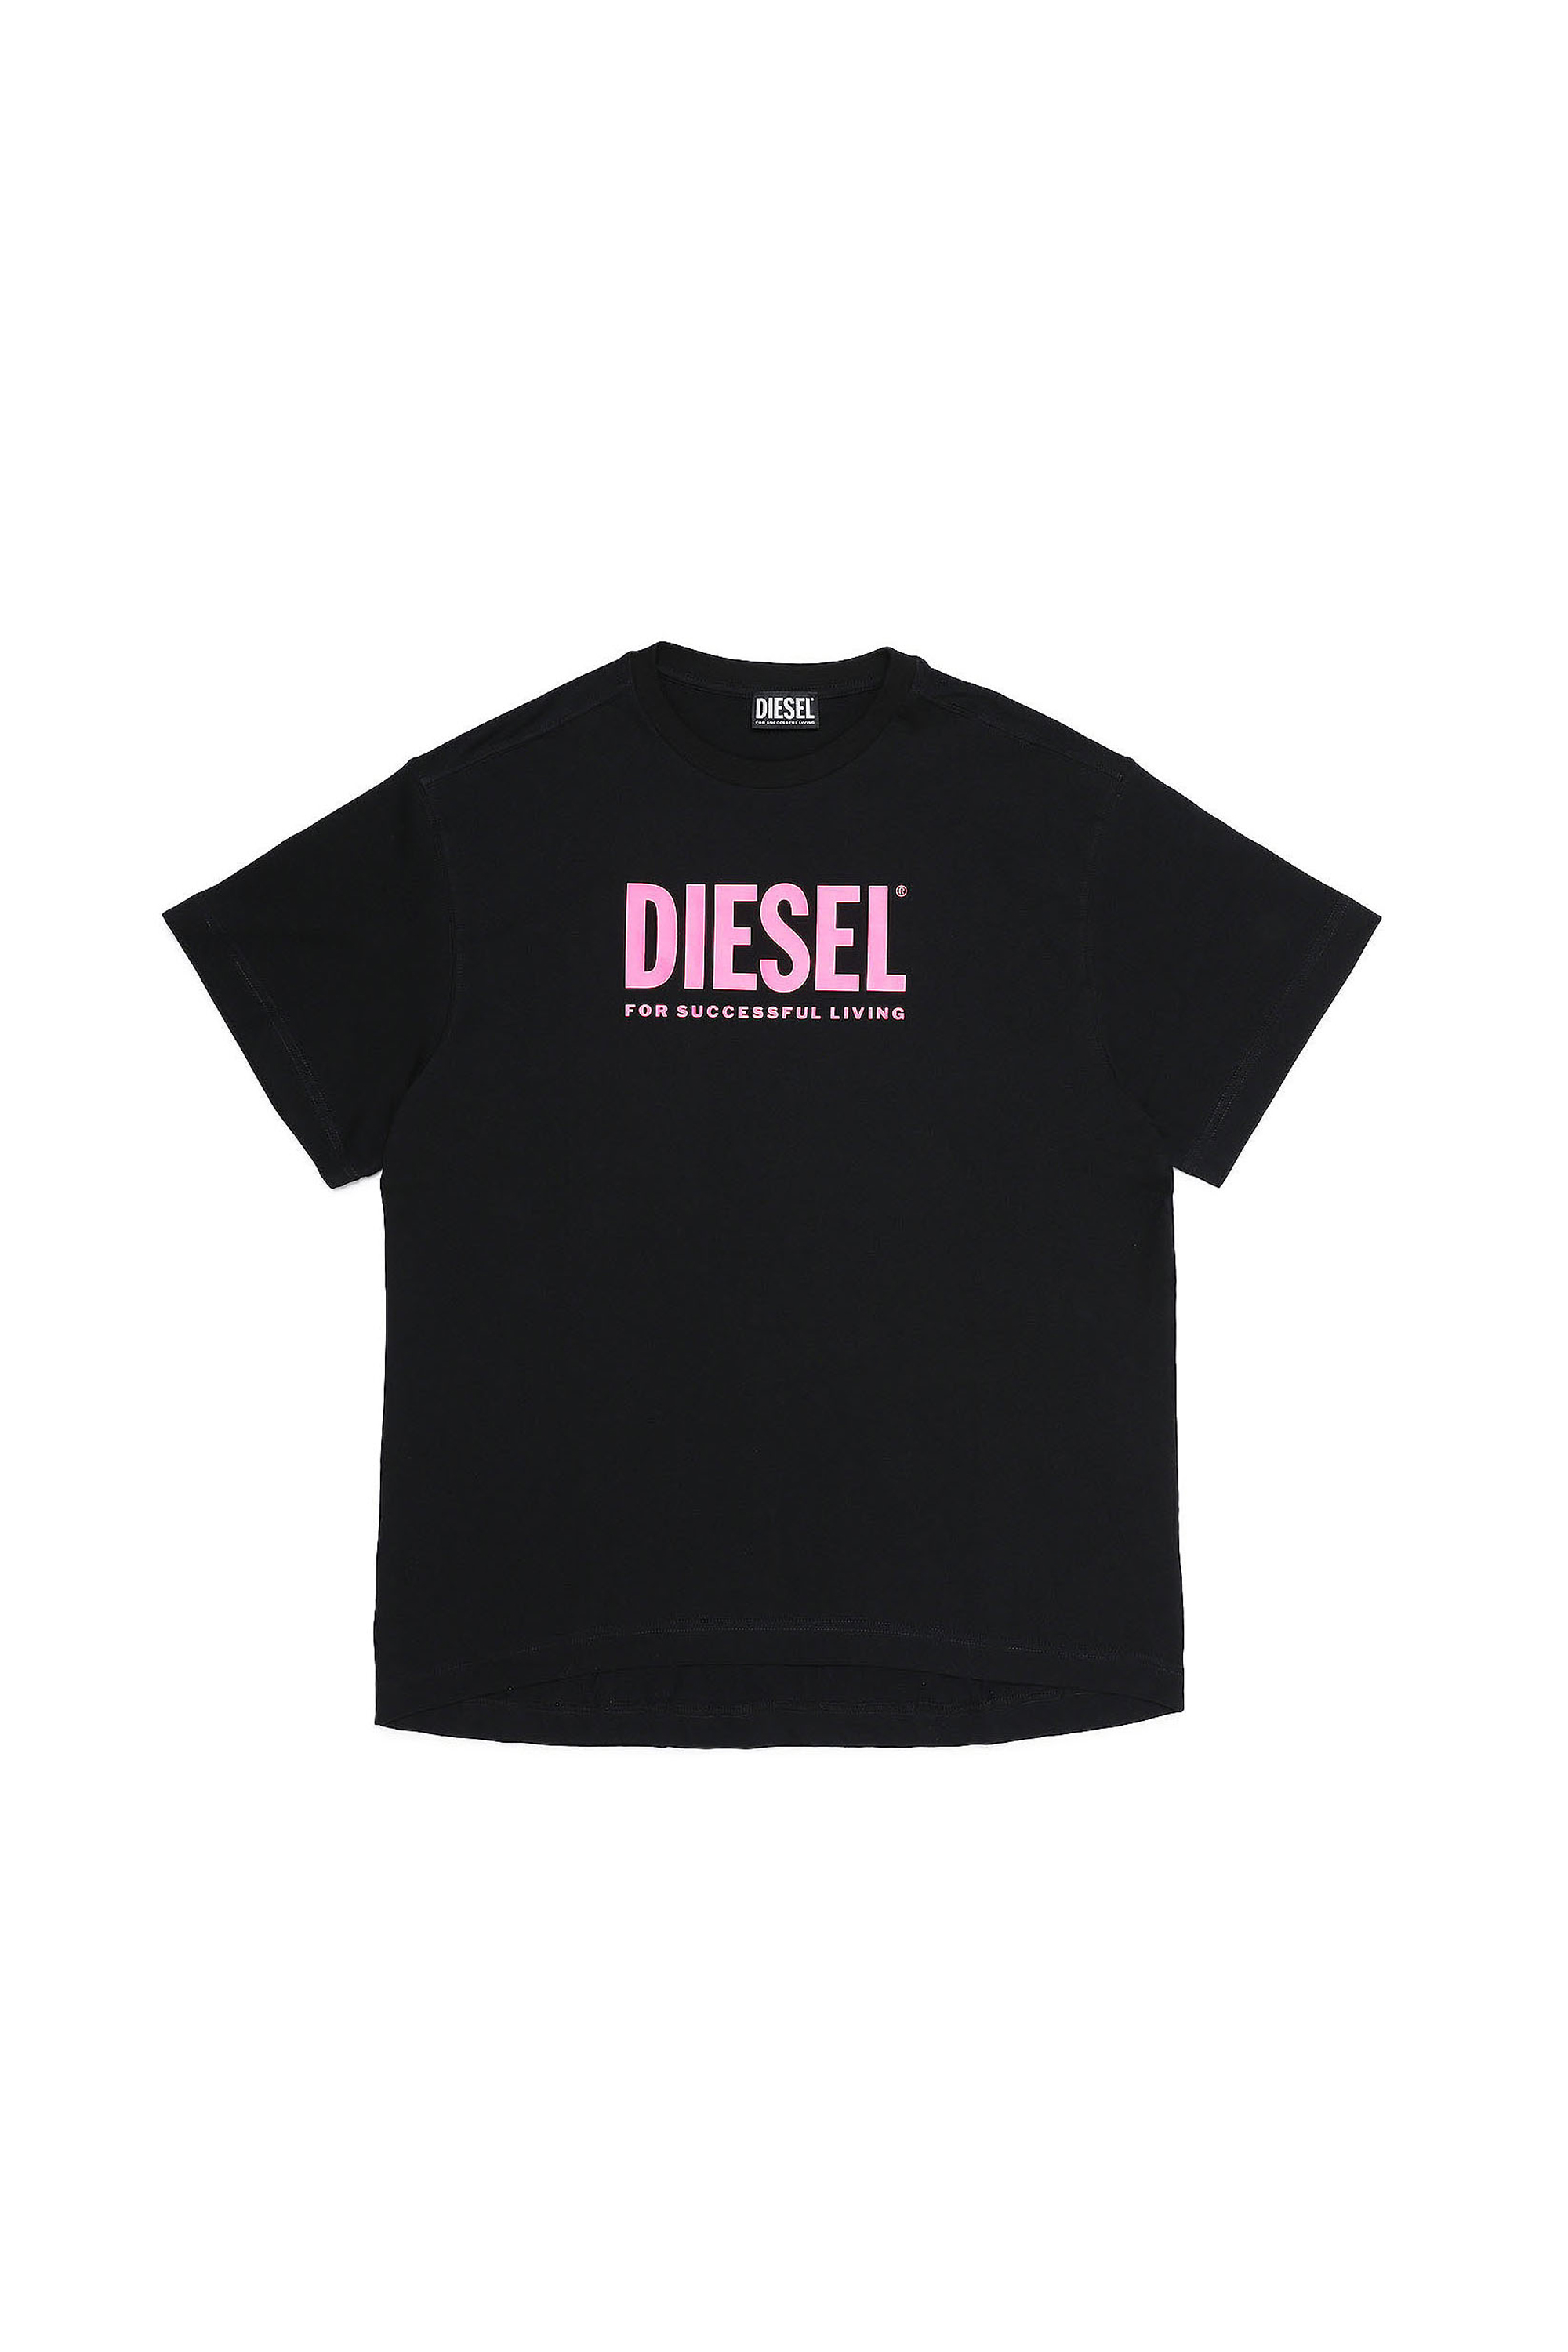 Diesel - DEXTRA, Black - Image 1